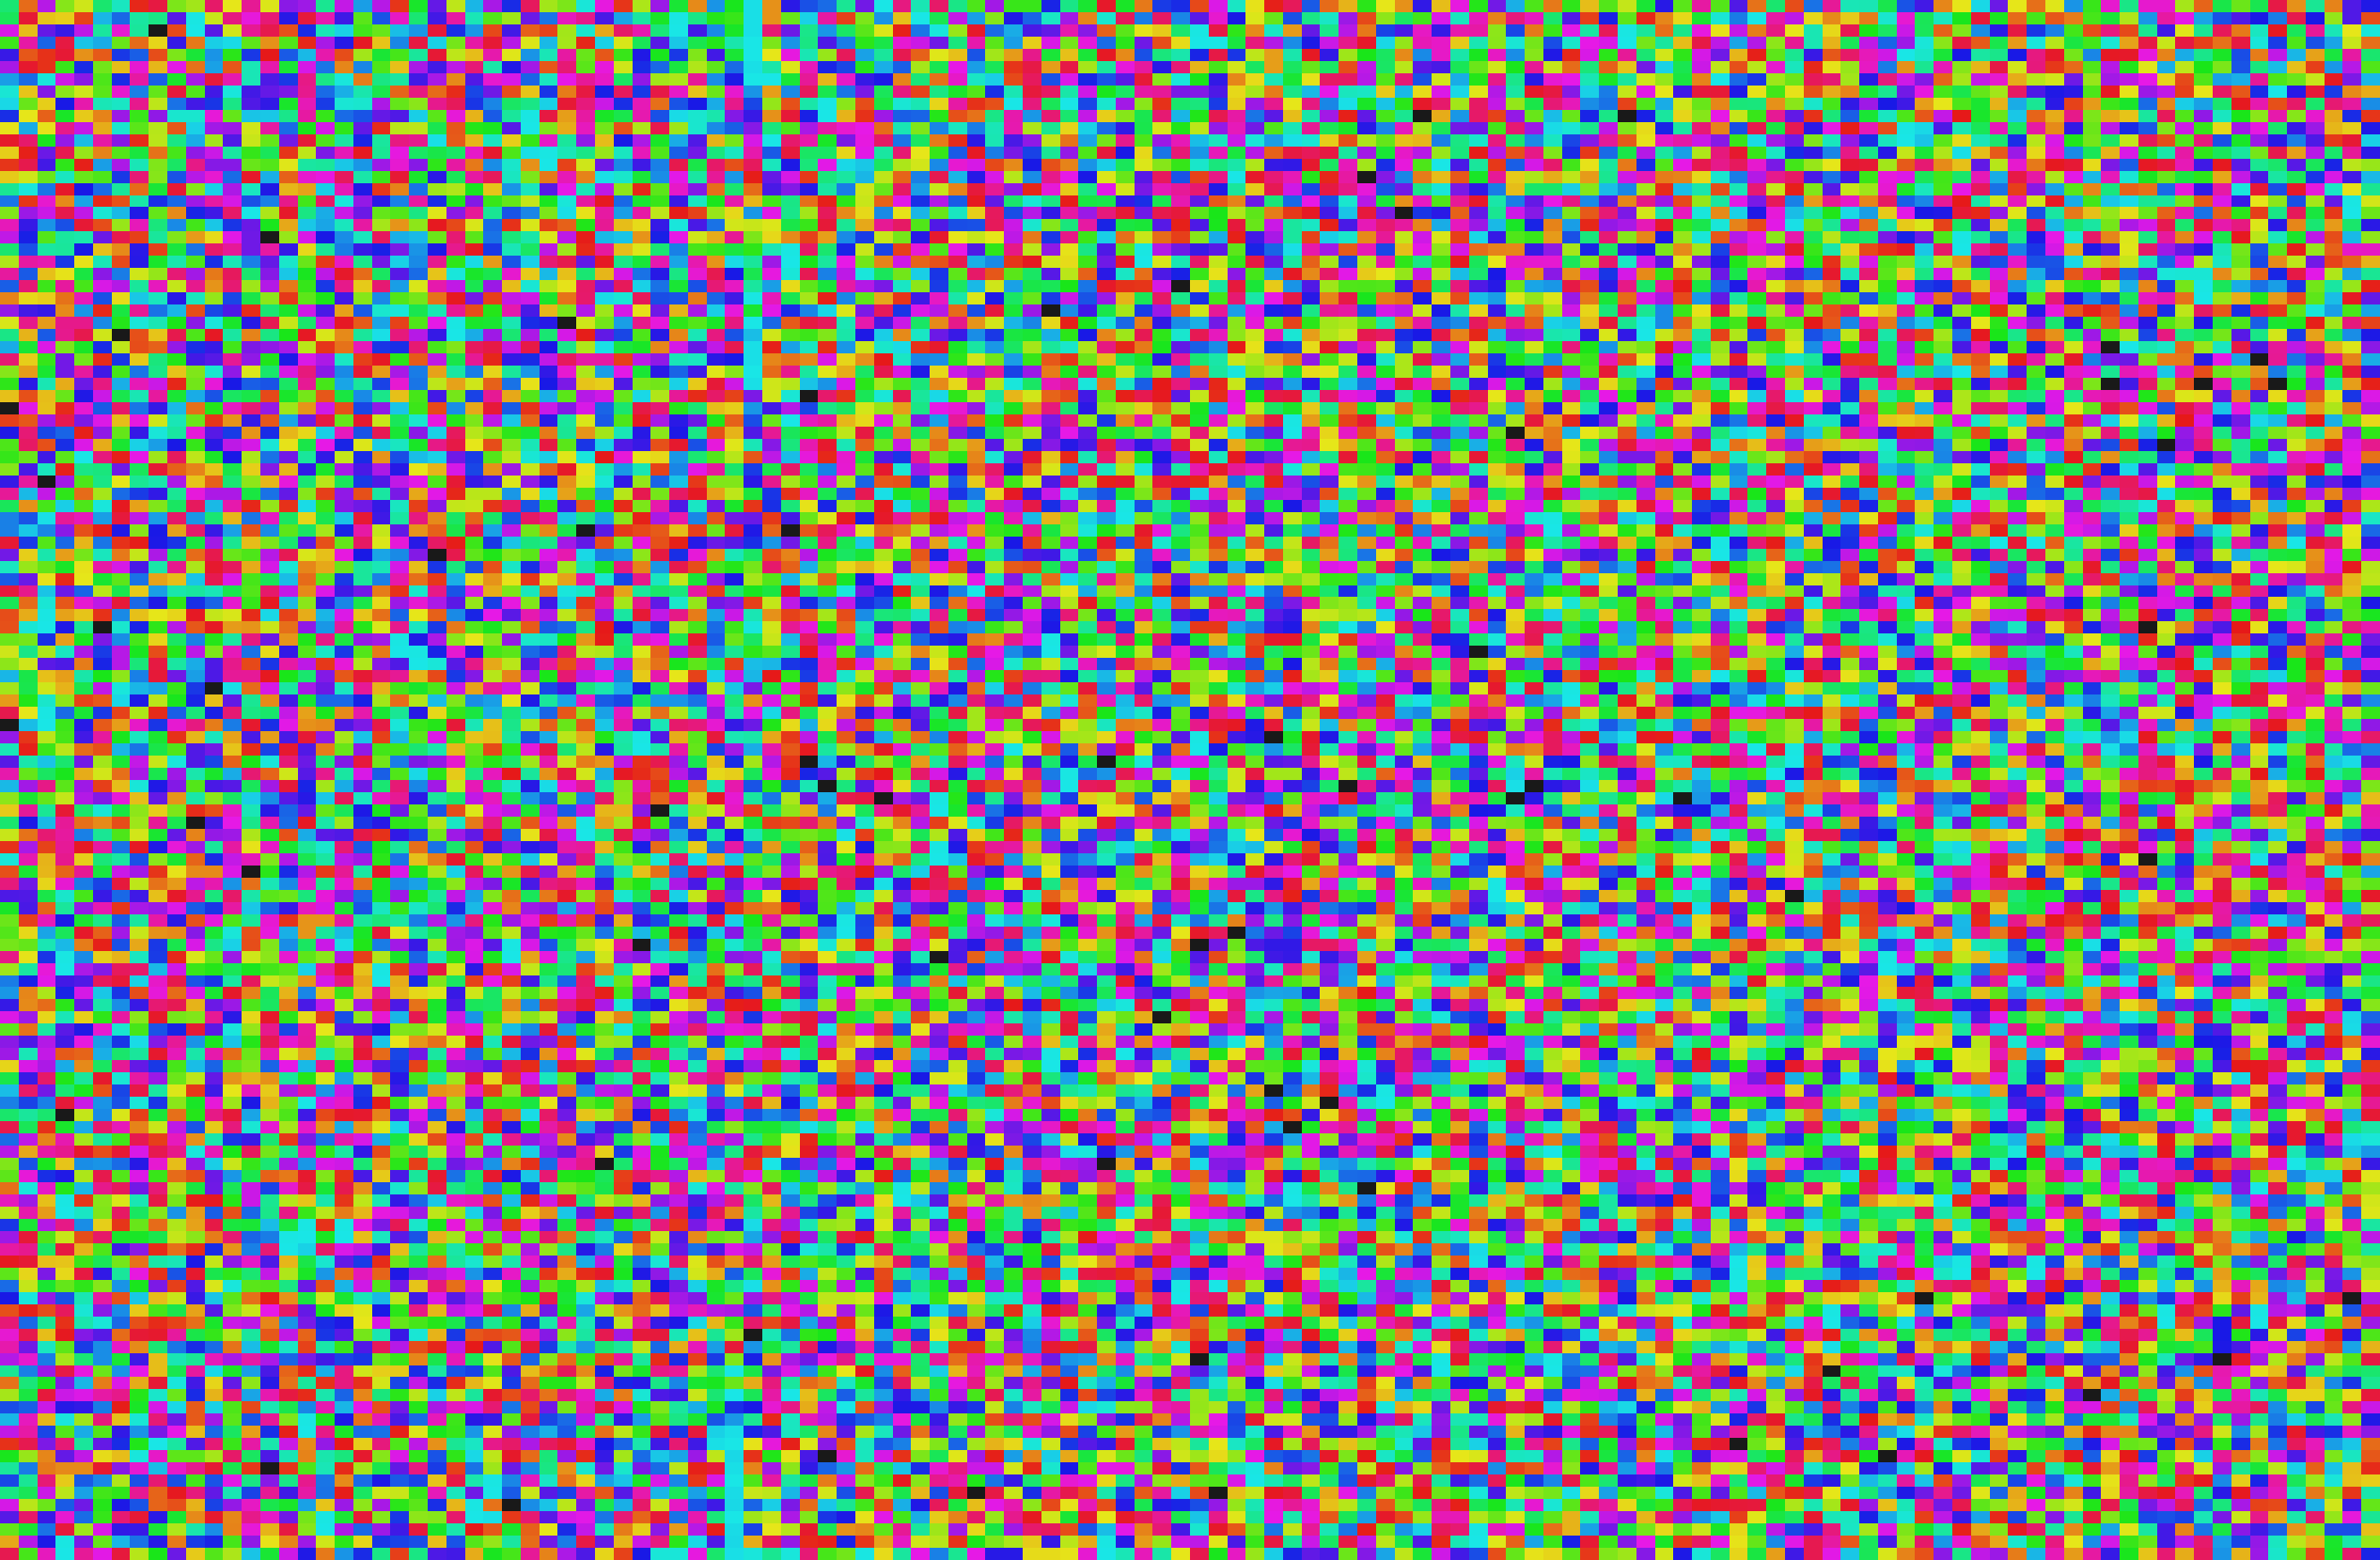 Quasi-random pixels